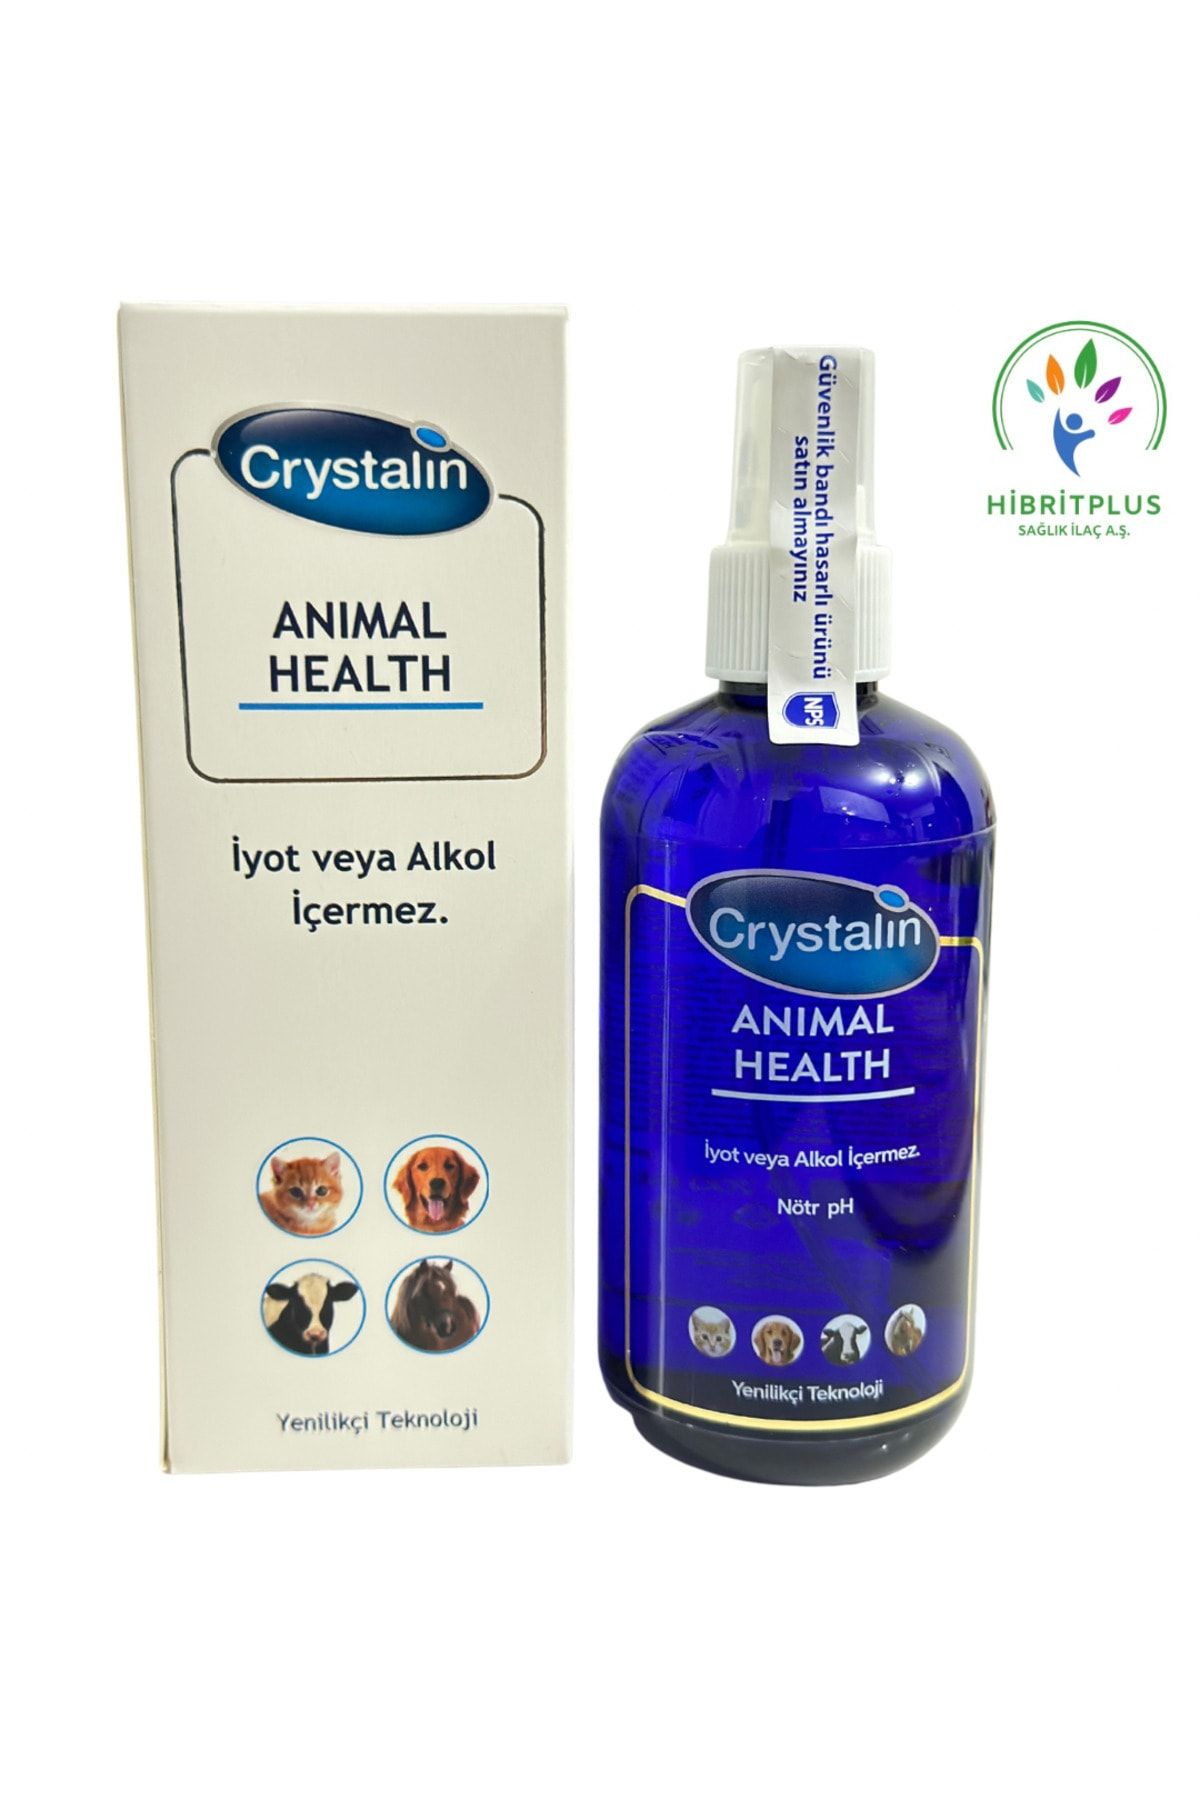 Crystalin Animal Health 200 Ml / 2025 Miatlıdır